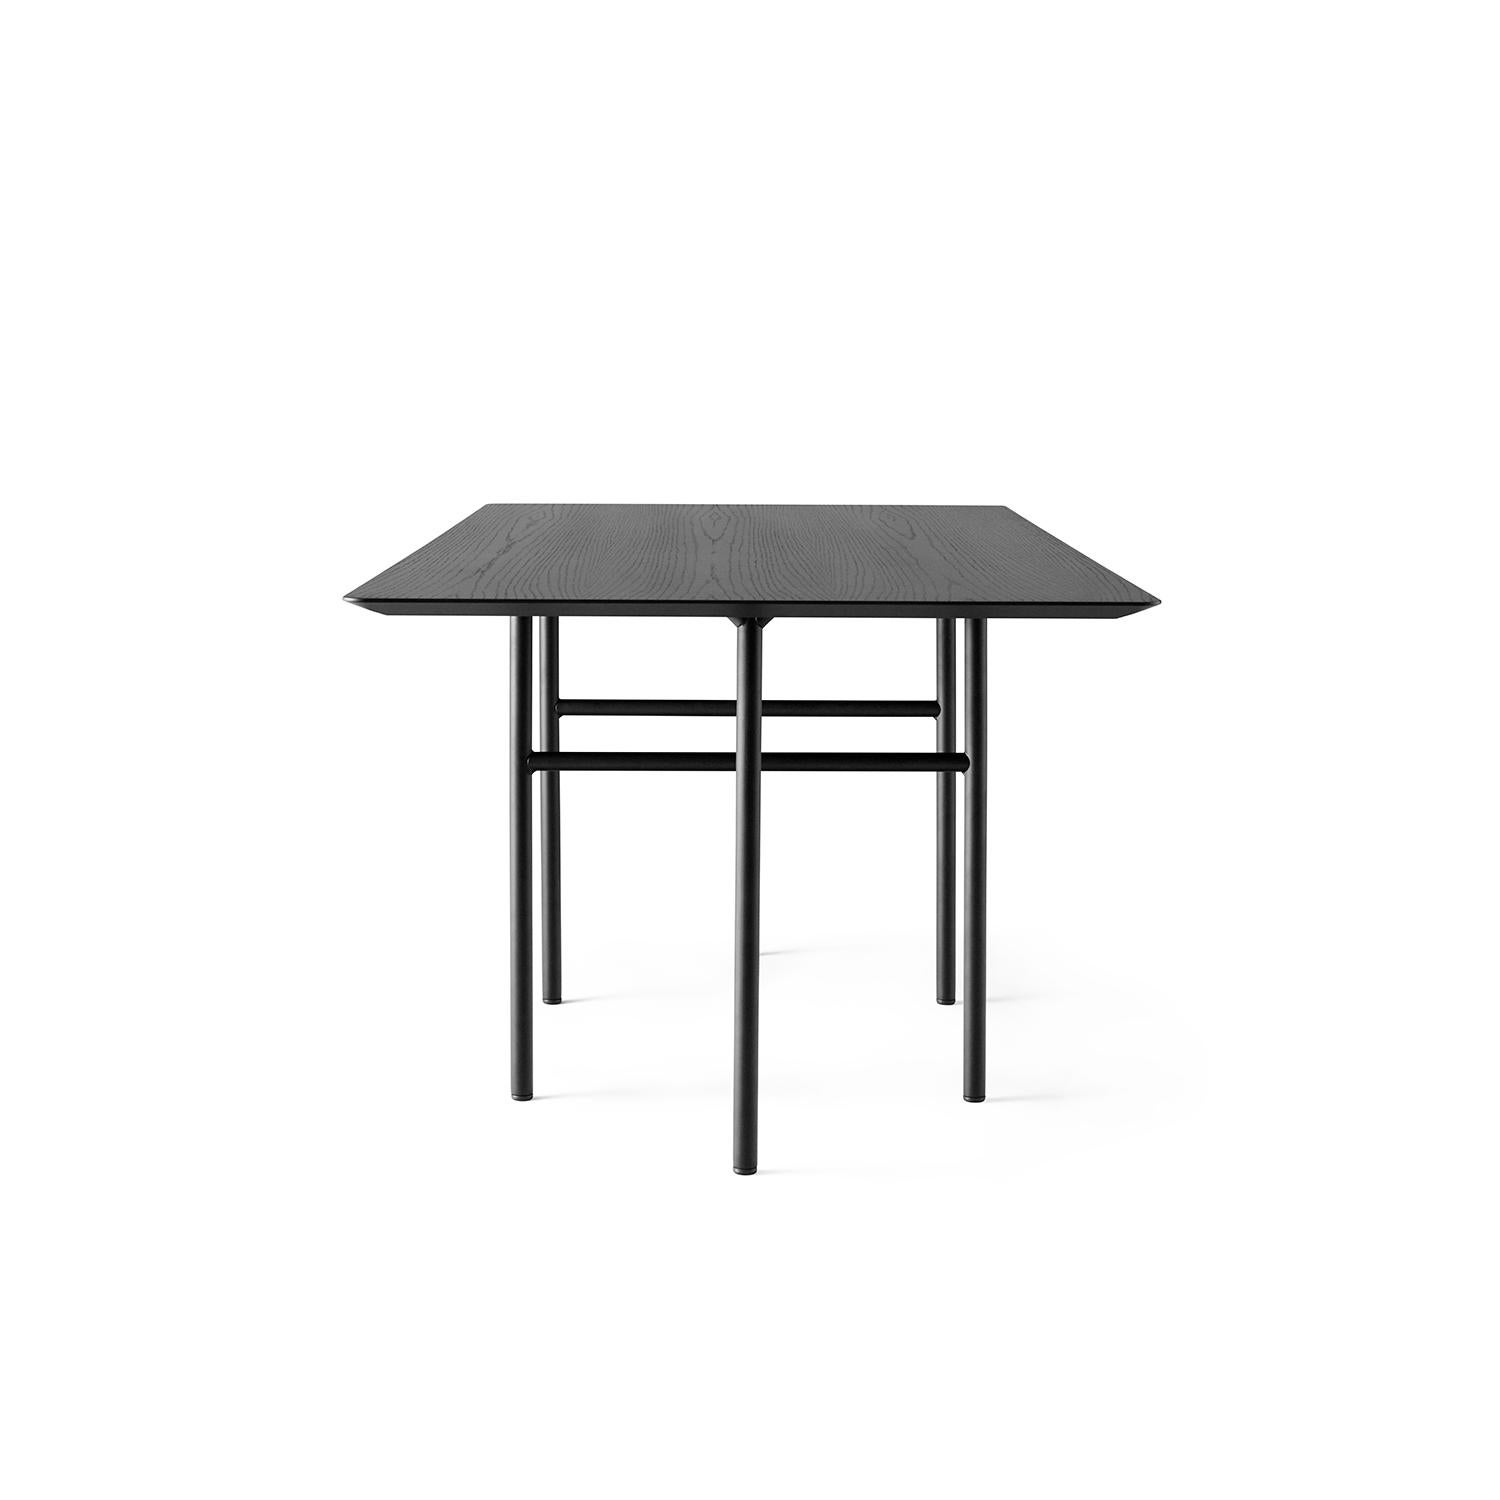 Unserer bescheidenen Meinung nach hat der Snaregade Tisch das Zeug zu einem modernen Klassiker. Seine Schönheit liegt in seinem zeitlosen Design und der perfekten Funktionalität. Seine schlanken Stützen sind so positioniert, dass sie den Platz für